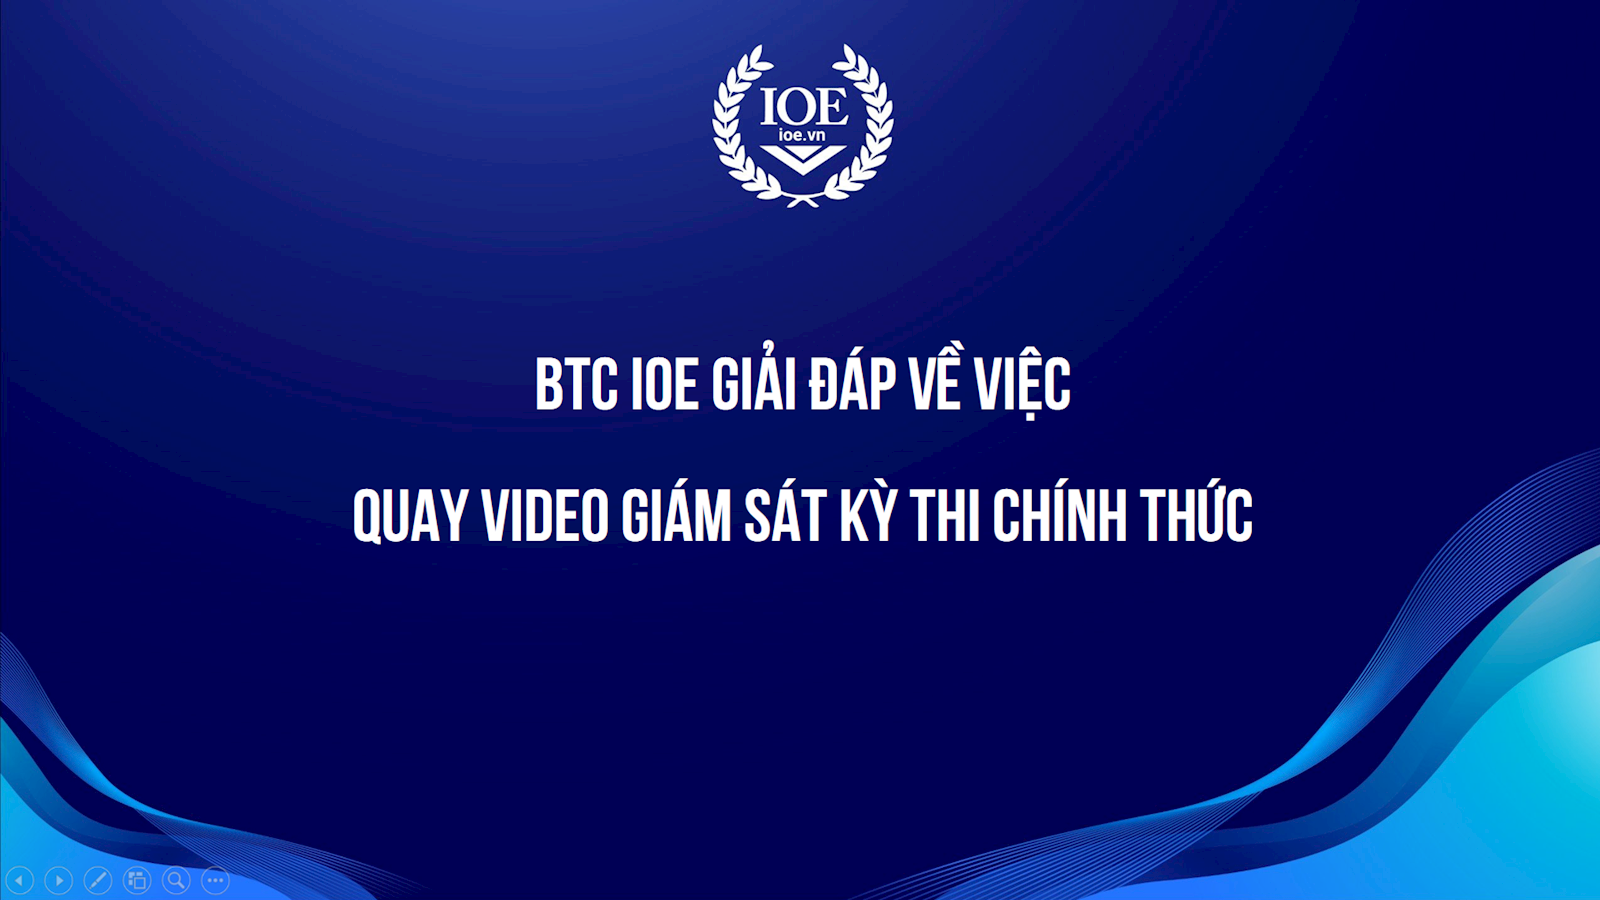 BTC IOE giải đáp về việc quay video giám sát kỳ thi chính thức